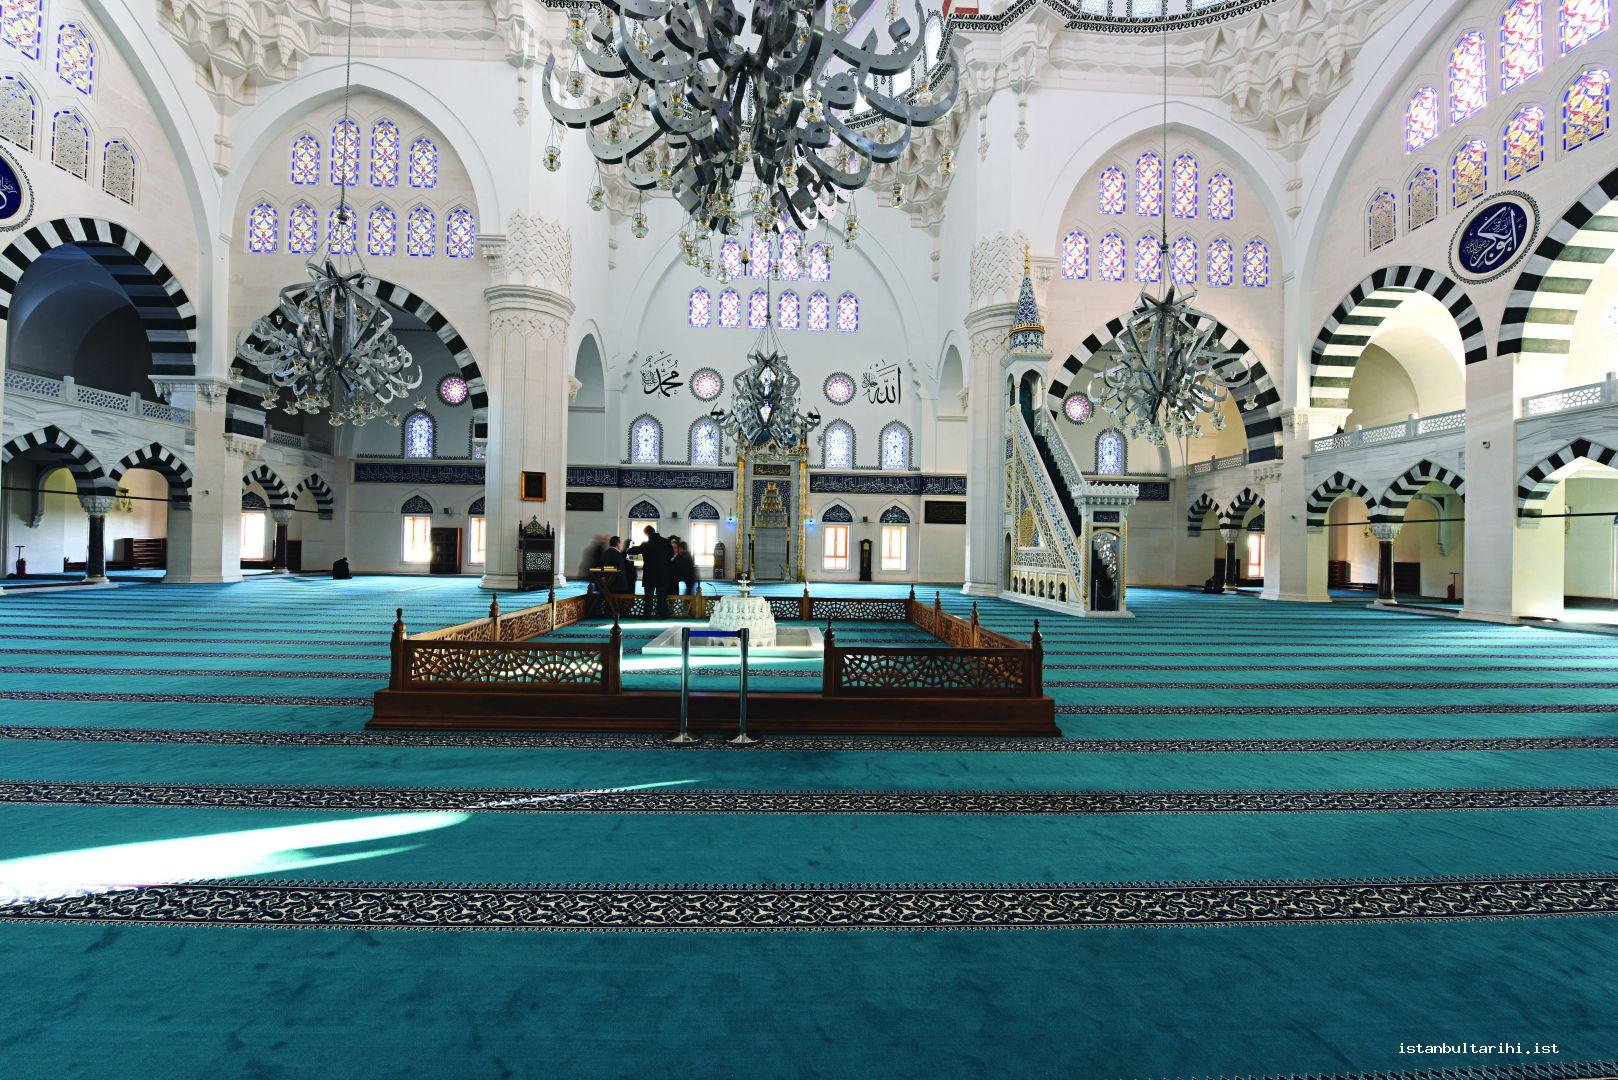 2a- Ataşehir Mimar Sinan Mosque